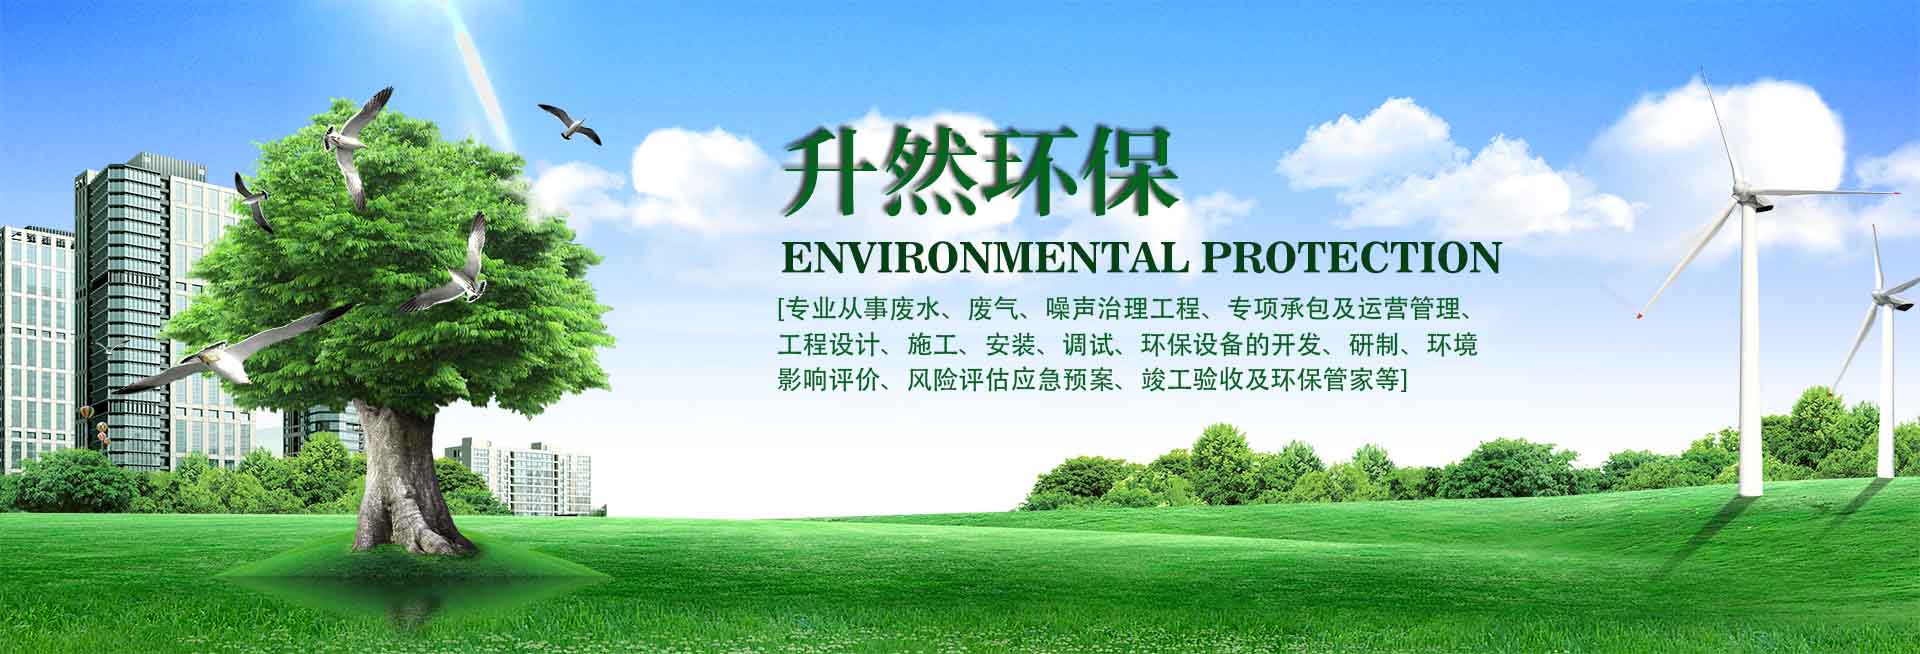 重庆升然环保工程有限公司